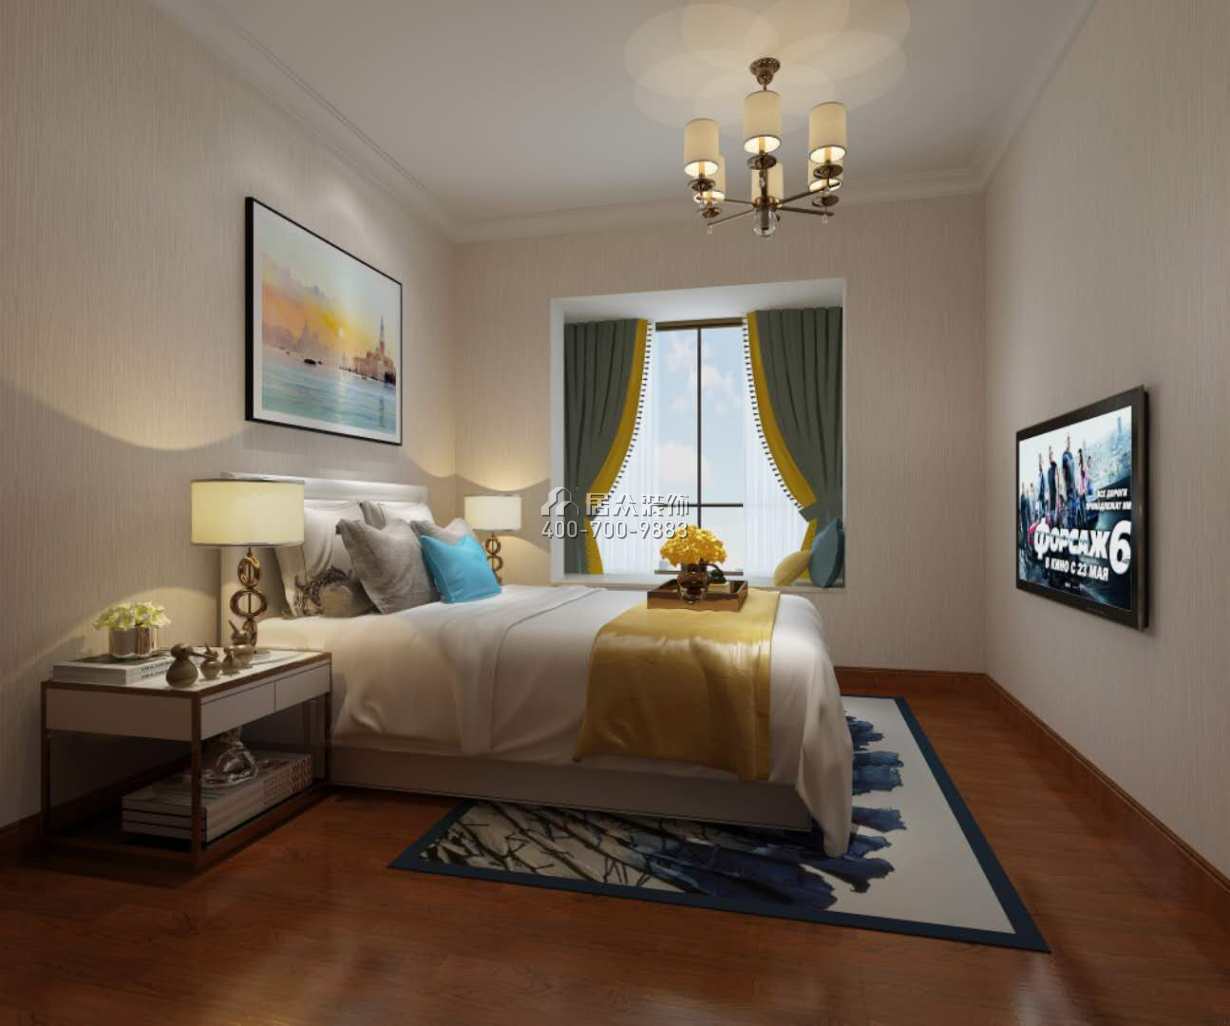 维港半岛177平方米欧式风格平层户型卧室装修效果图